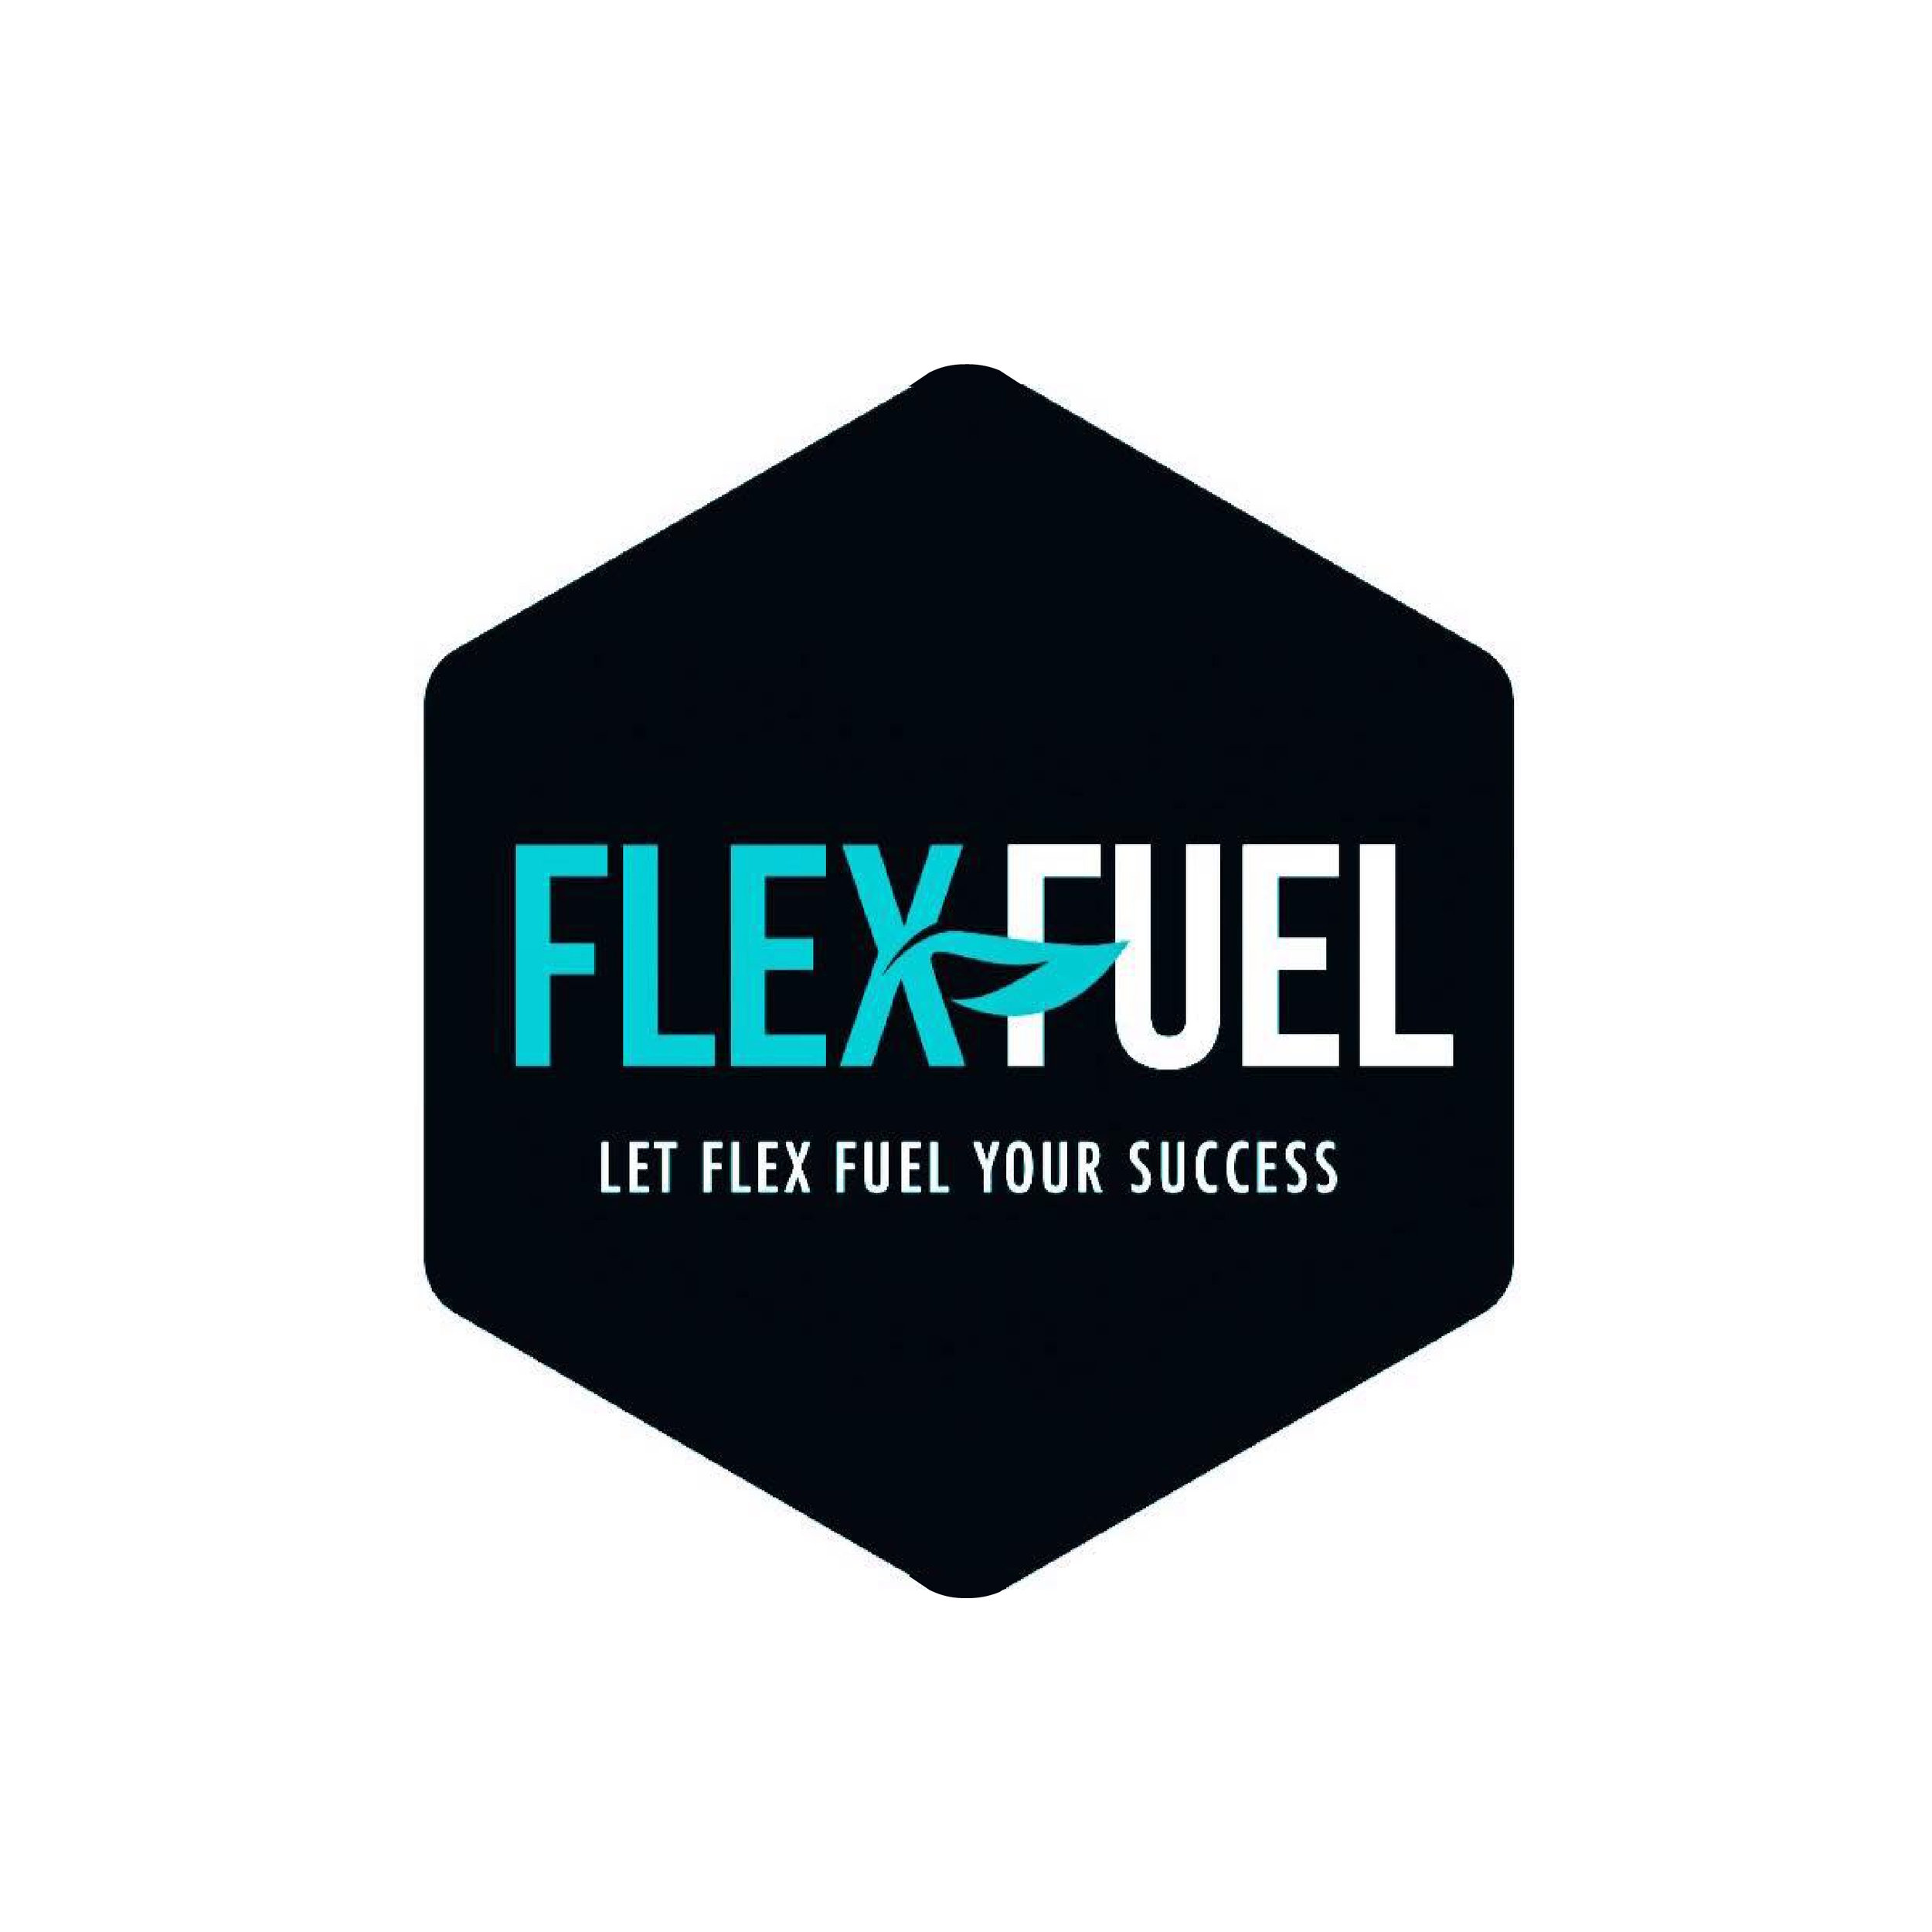 flexfuel-01.jpg